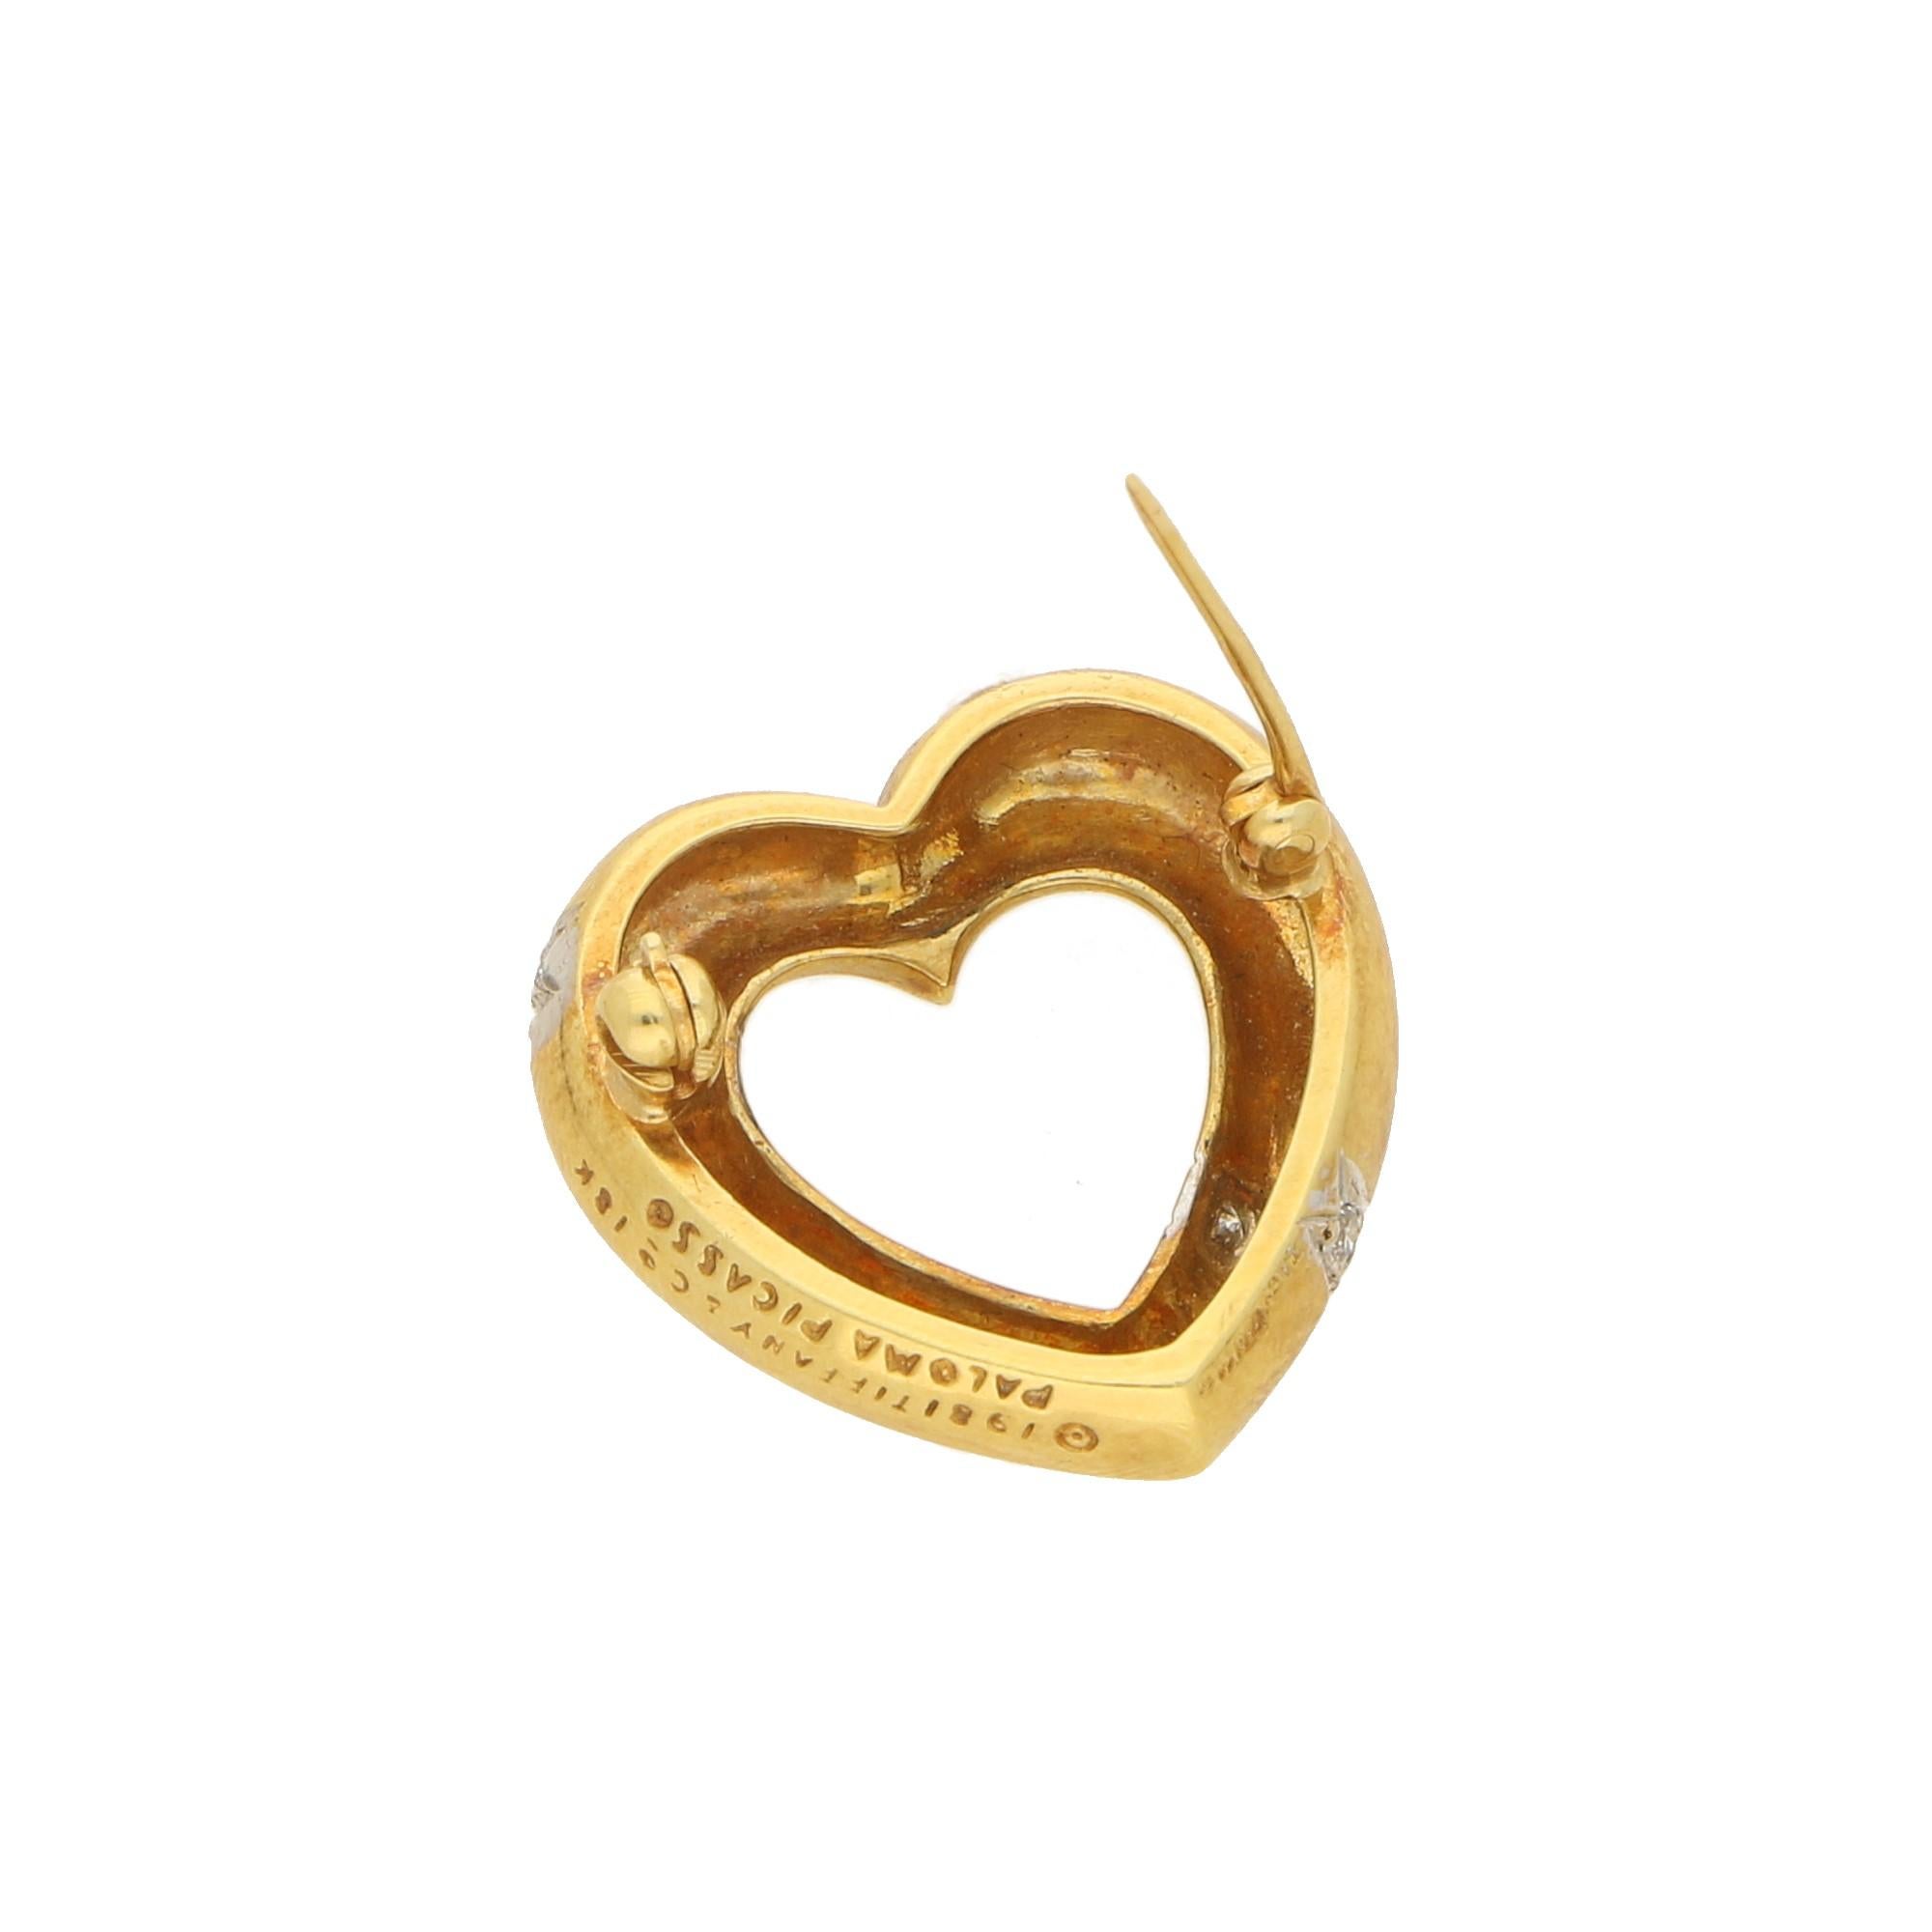 Retro Paloma Picasso Tiffany & Co. Diamond Heart Brooch in 18 Carat Gold, circa 1981